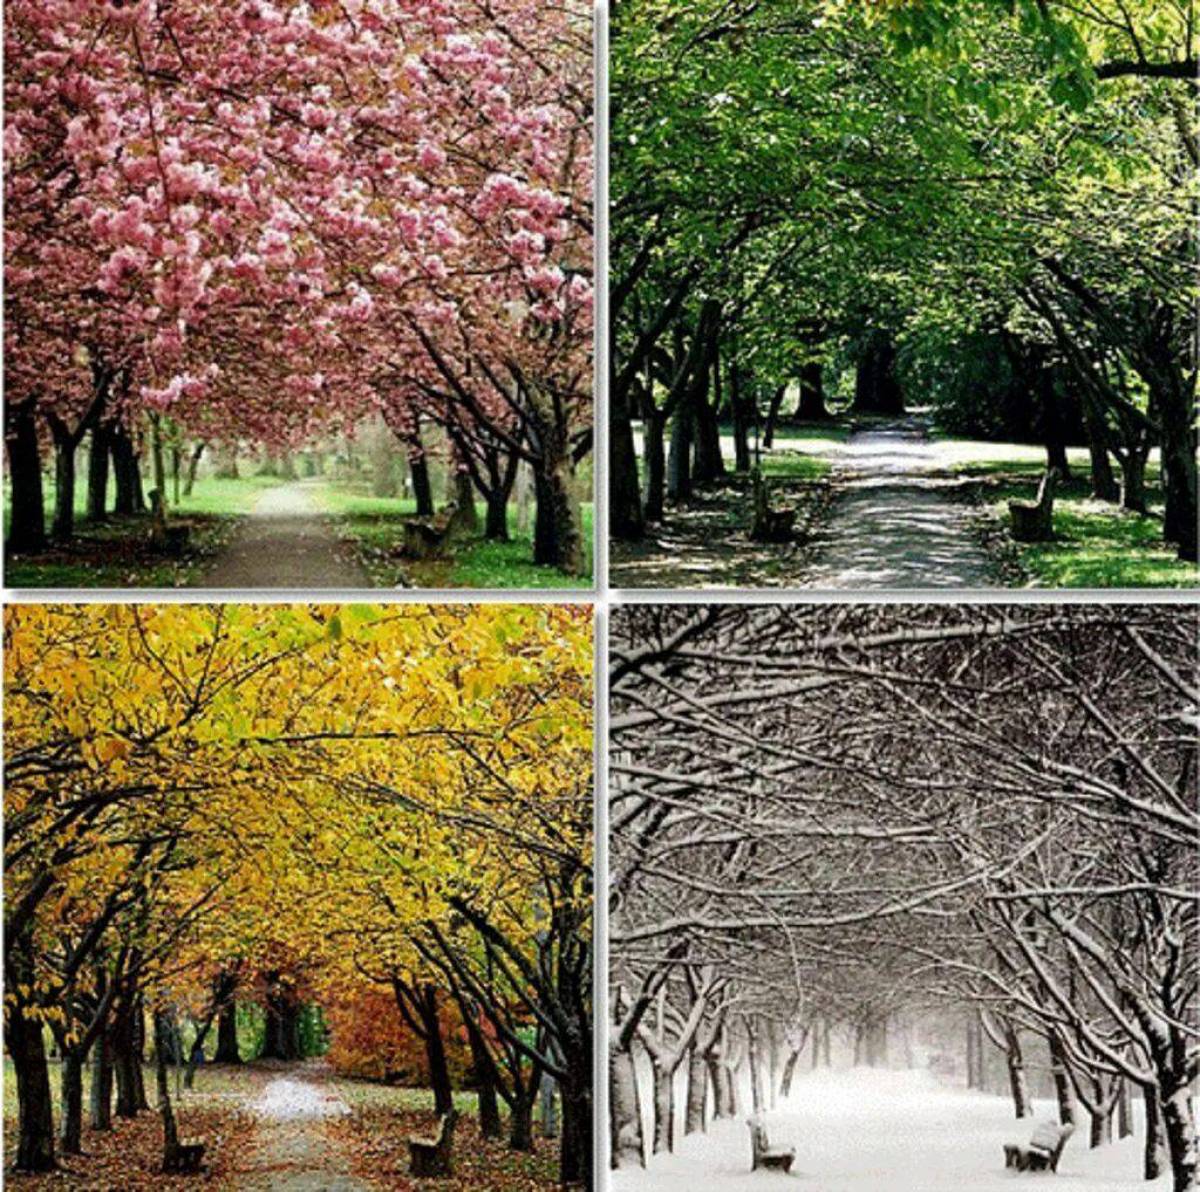 Winter spring. Зима,Весна,лето,осень. Времена года. Пейзаж по временам года. Пейзаж в четырёх времени года.